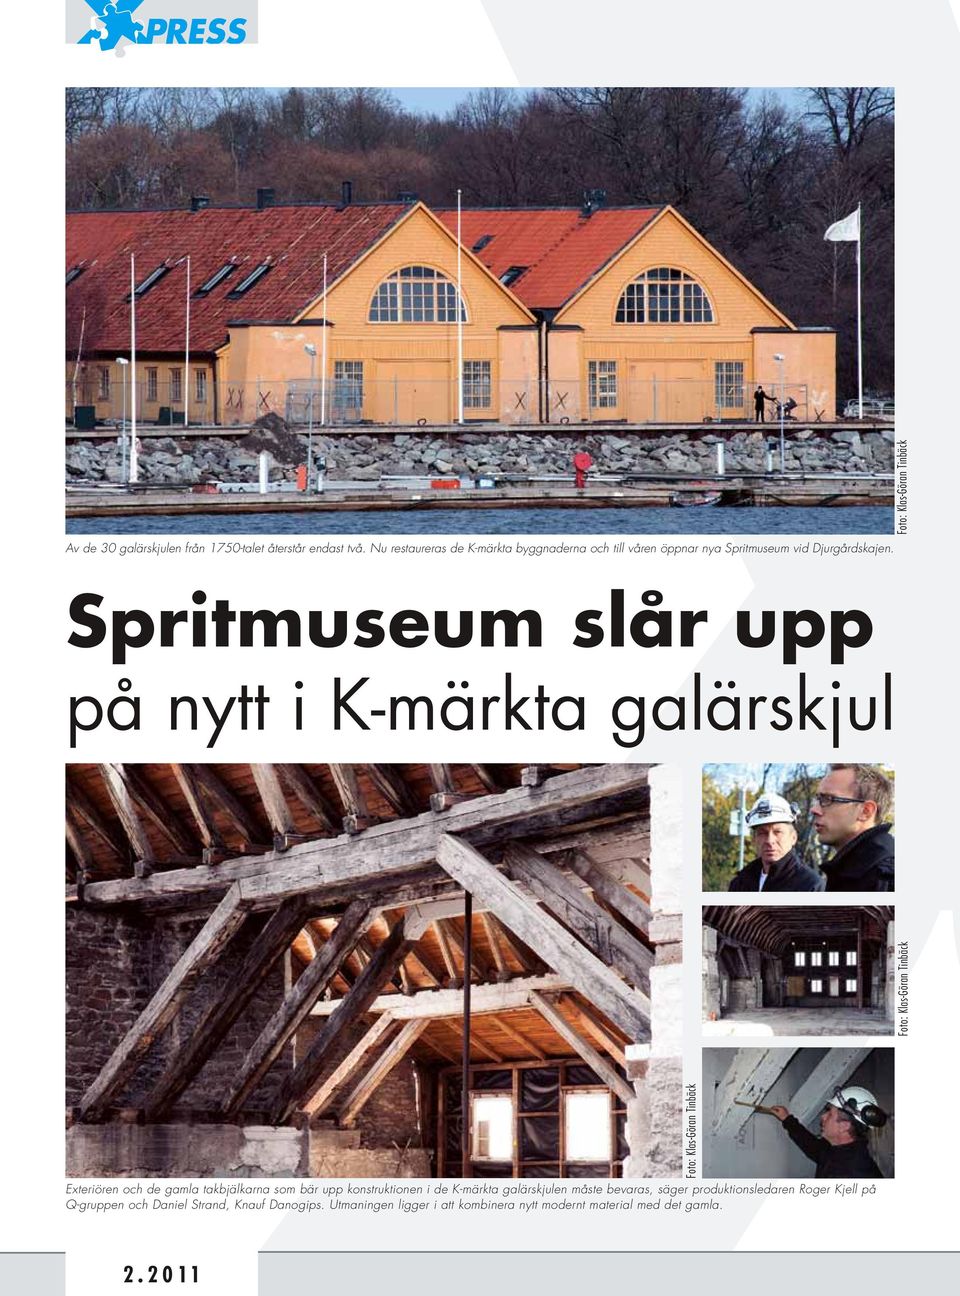 Foto: Klas-Göran Tinbäck Spritmuseum slår upp på nytt i K-märkta galärskjul Foto: Klas-Göran Tinbäck Exteriören och de gamla takbjälkarna